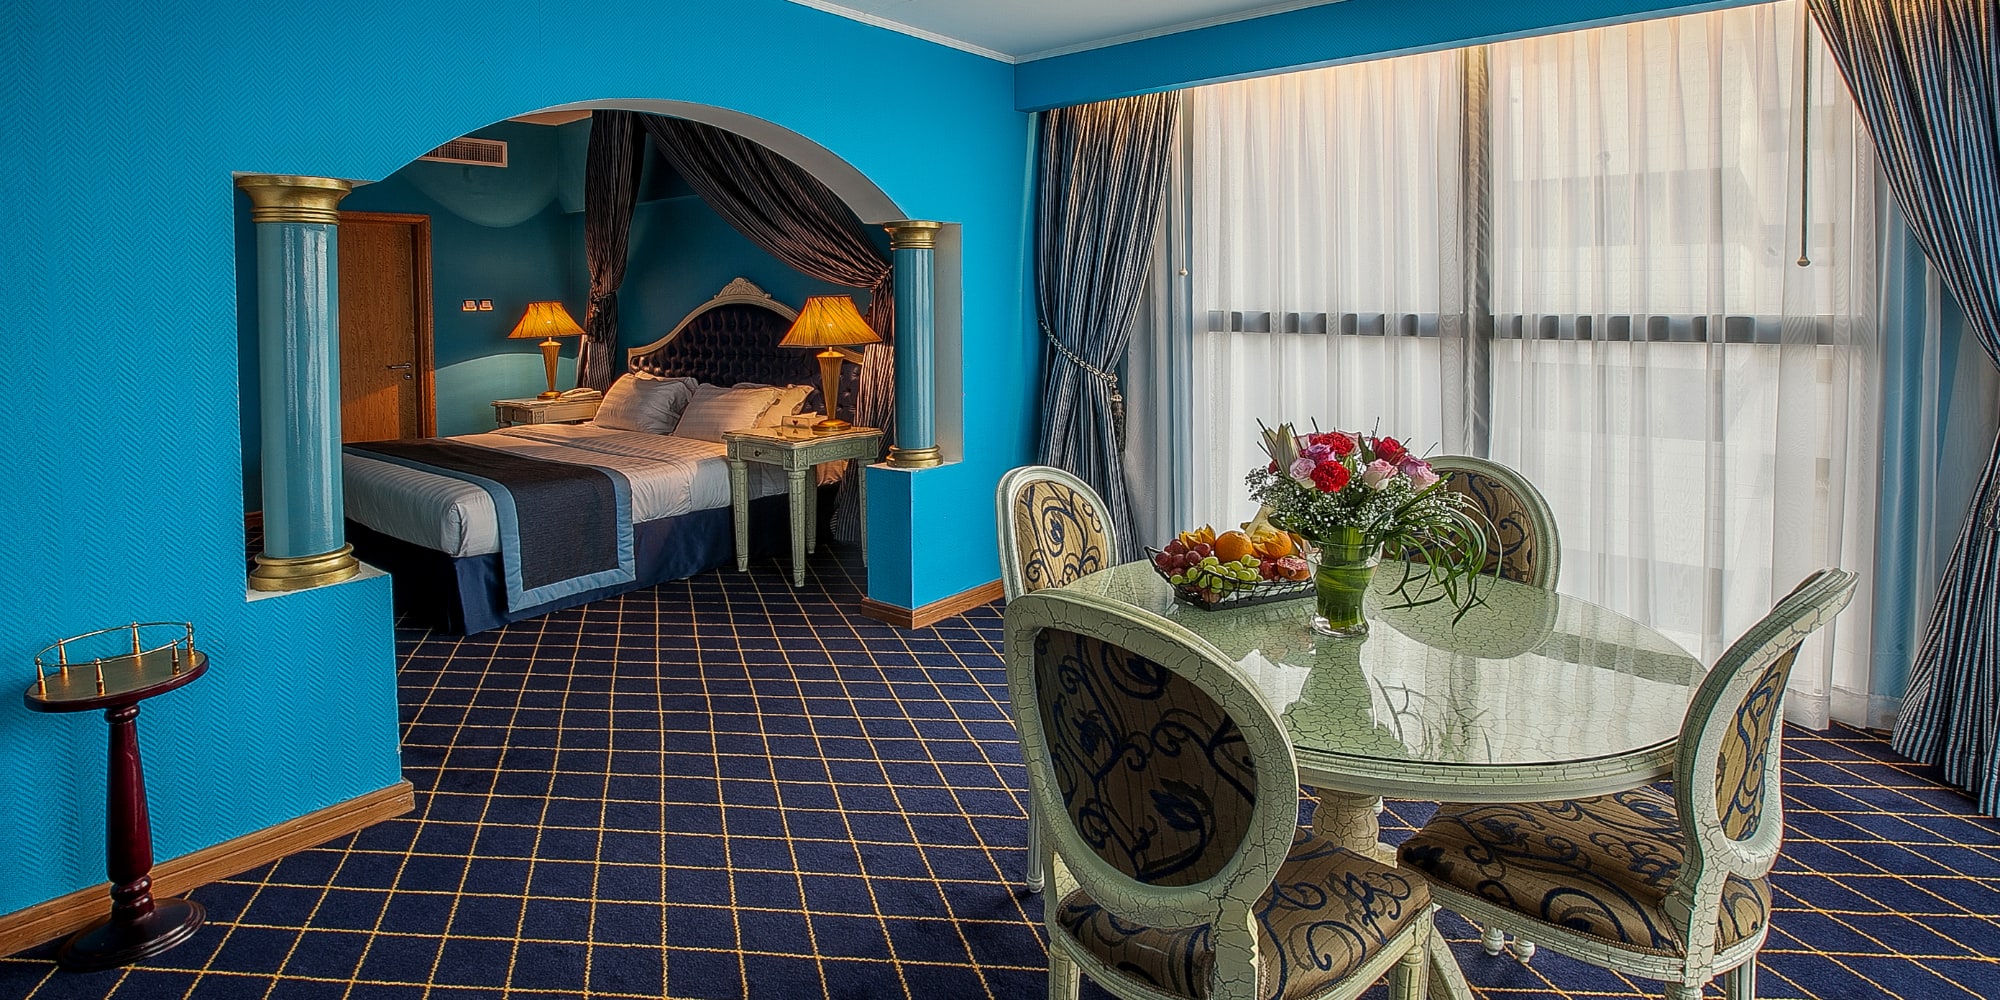 Moscow Hotel Rooms in Deira Dubai City Center